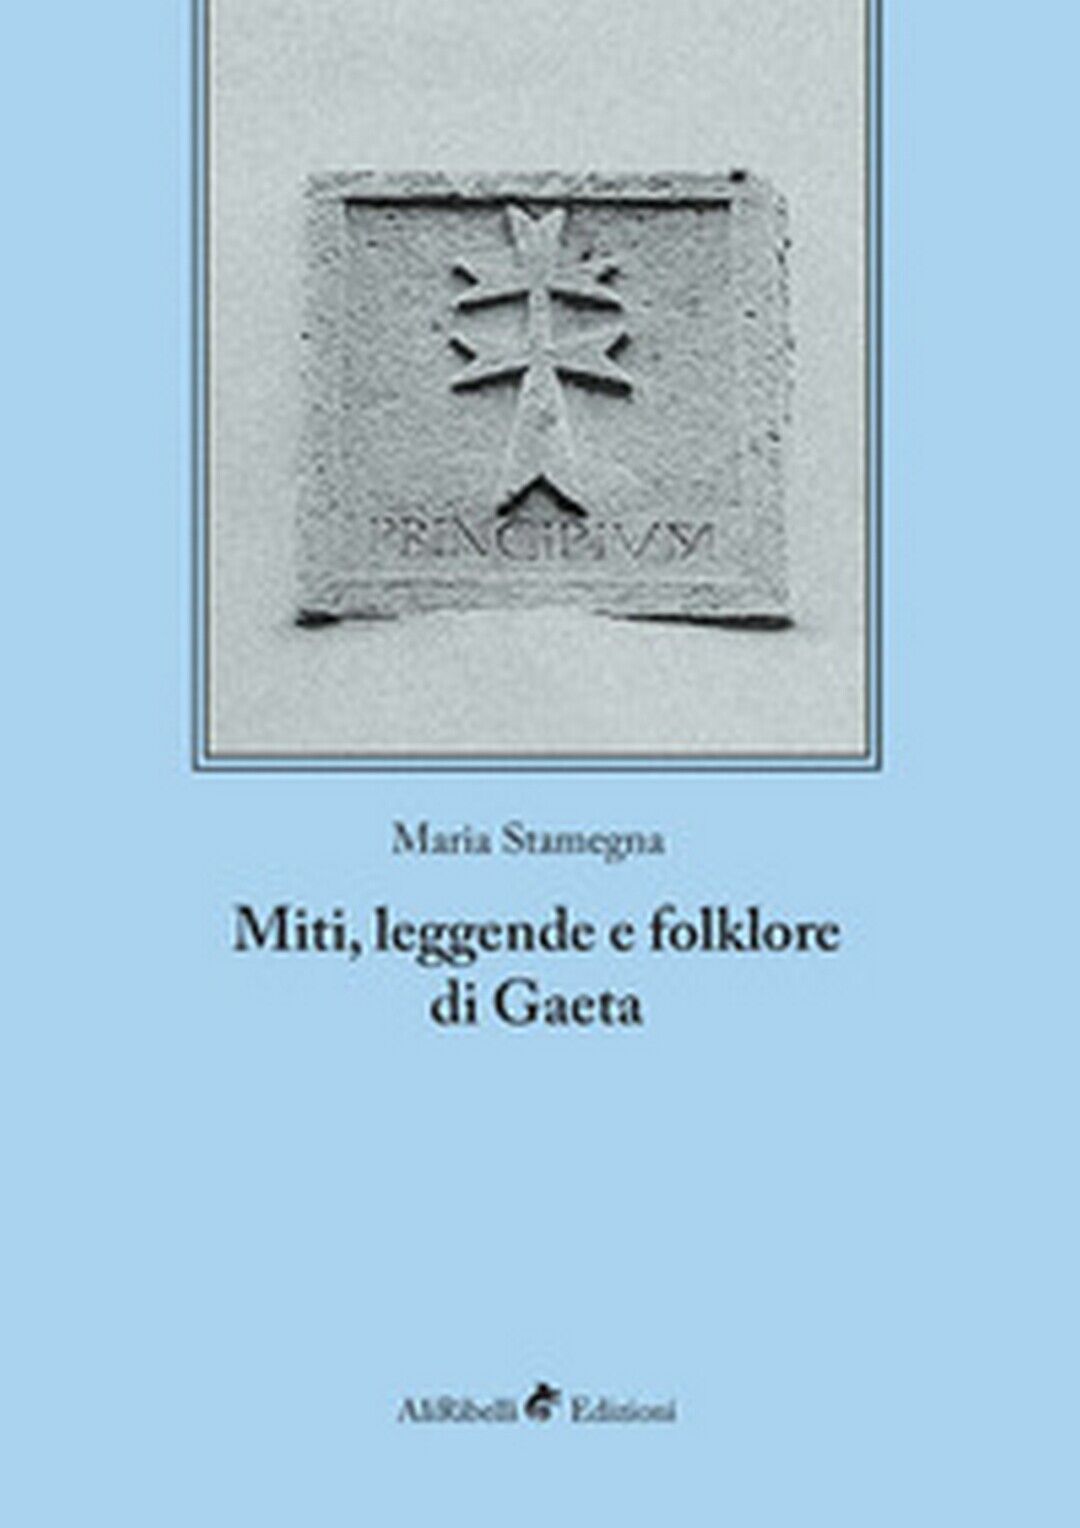 Miti, leggende e folklore - Gaeta  di Maria Stamegna,  2018,  Ali Ribelli Ed. libro usato